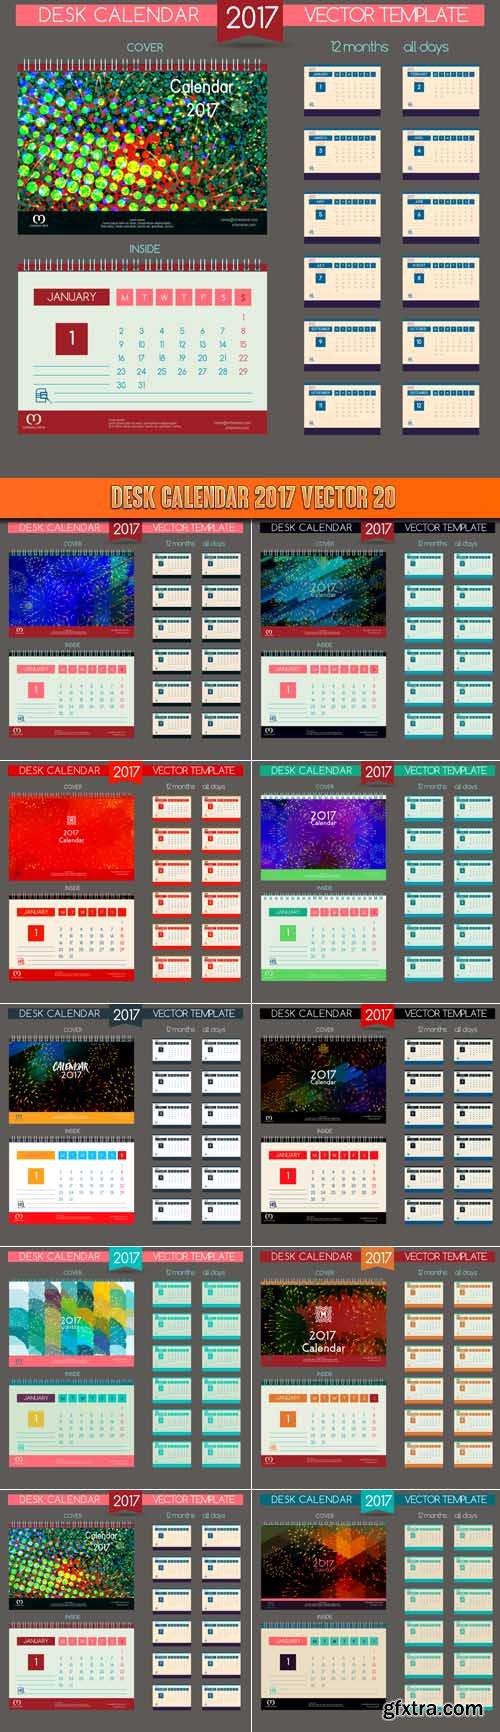 Desk Calendar 2017 vector 20